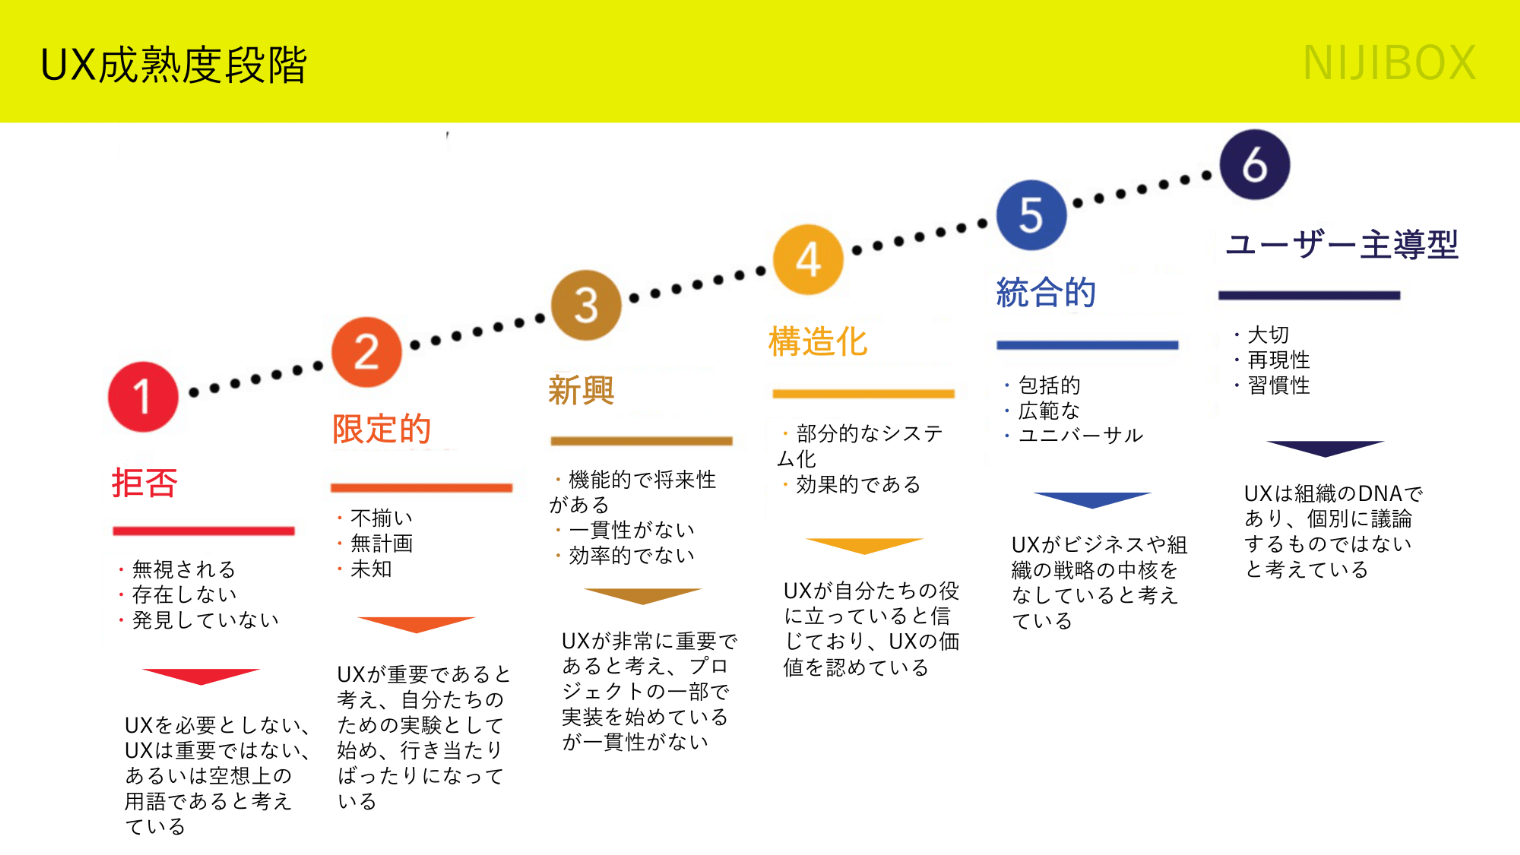 UX成熟度段階図